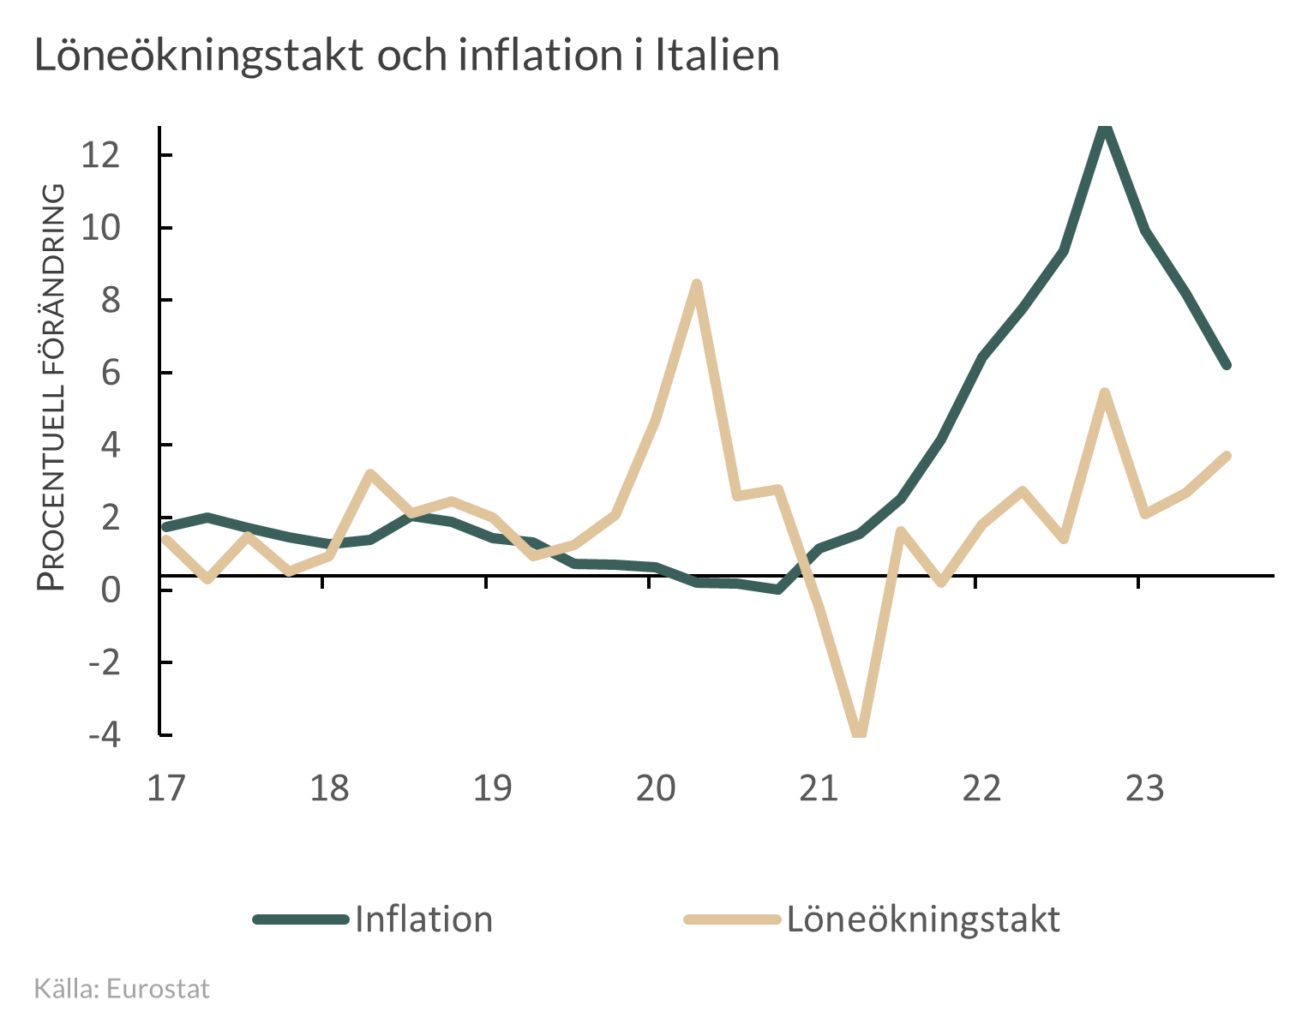 Löne- och inflationsutveckling i Italien  2017-2023